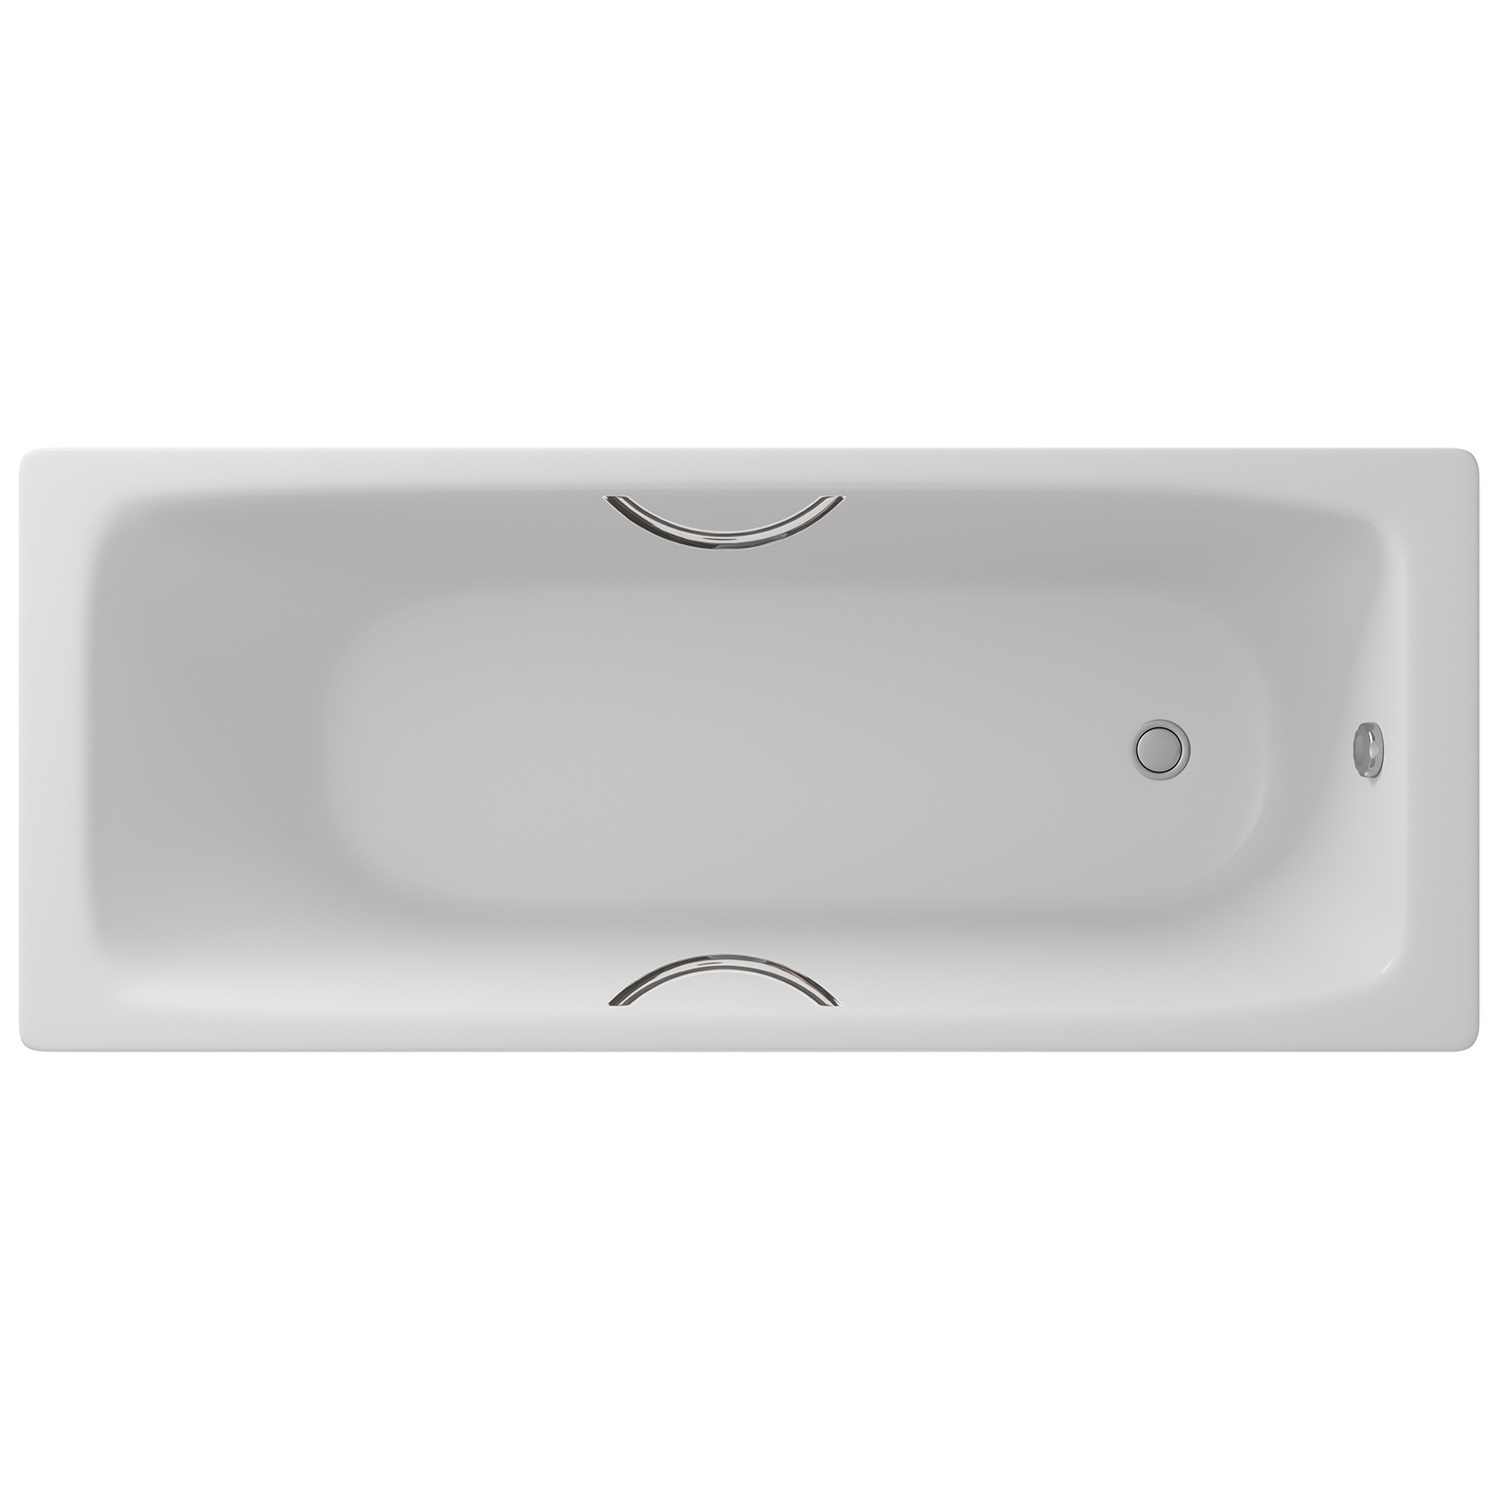 Чугунная ванна Delice Parallel 170х70 с ручками чугунная ванна delice aurora 170х70 dlr230605